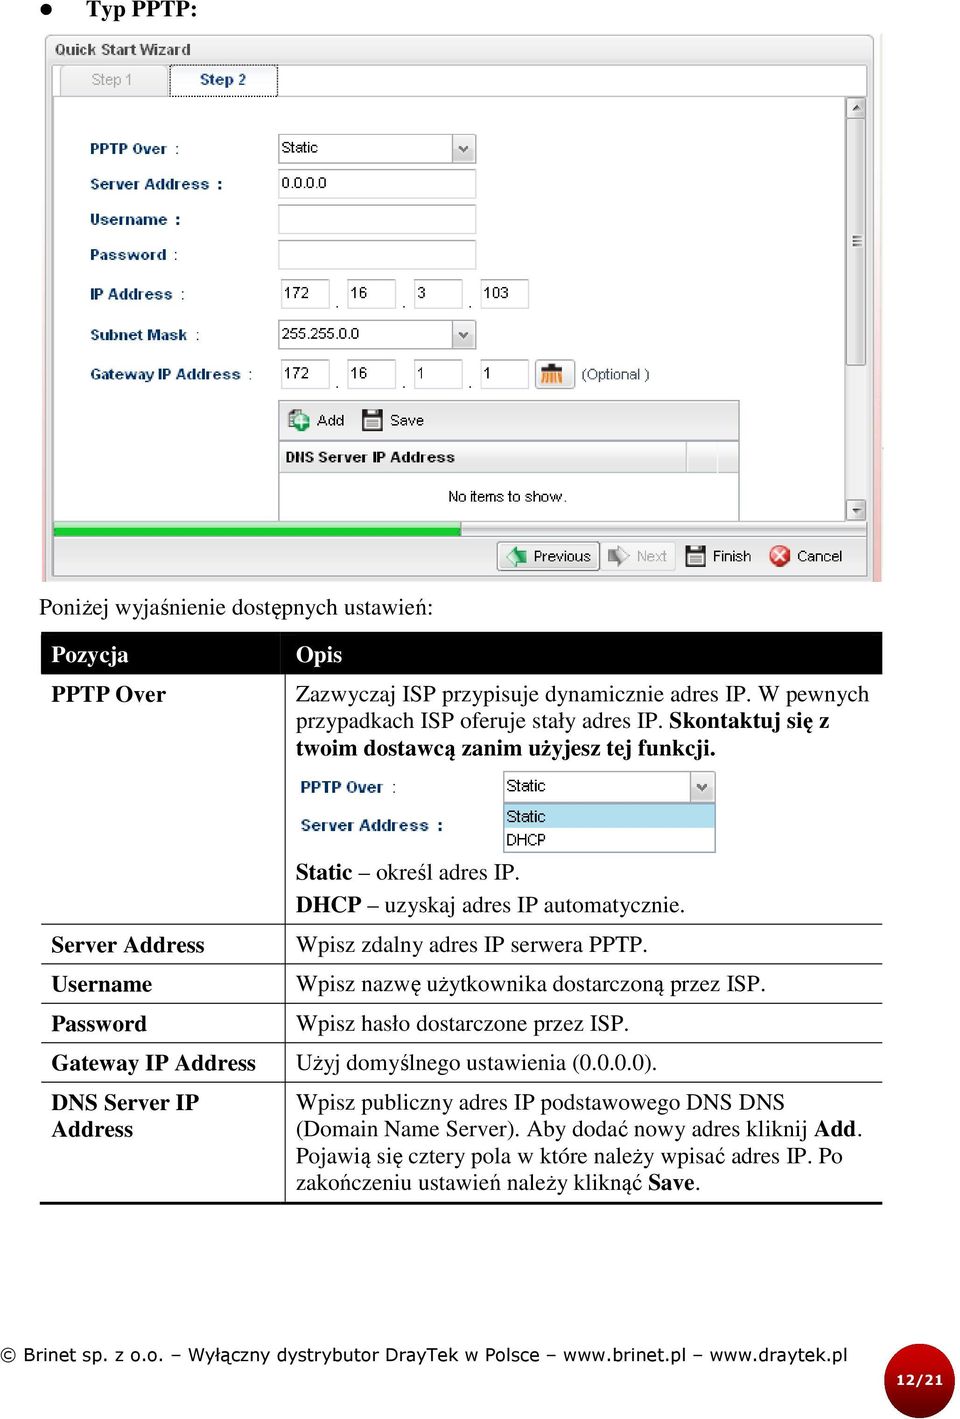 DHCP uzyskaj adres IP automatycznie. Wpisz zdalny adres IP serwera PPTP. Wpisz nazwę użytkownika dostarczoną ą przez ISP. Wpisz hasło dostarczone przez ISP.